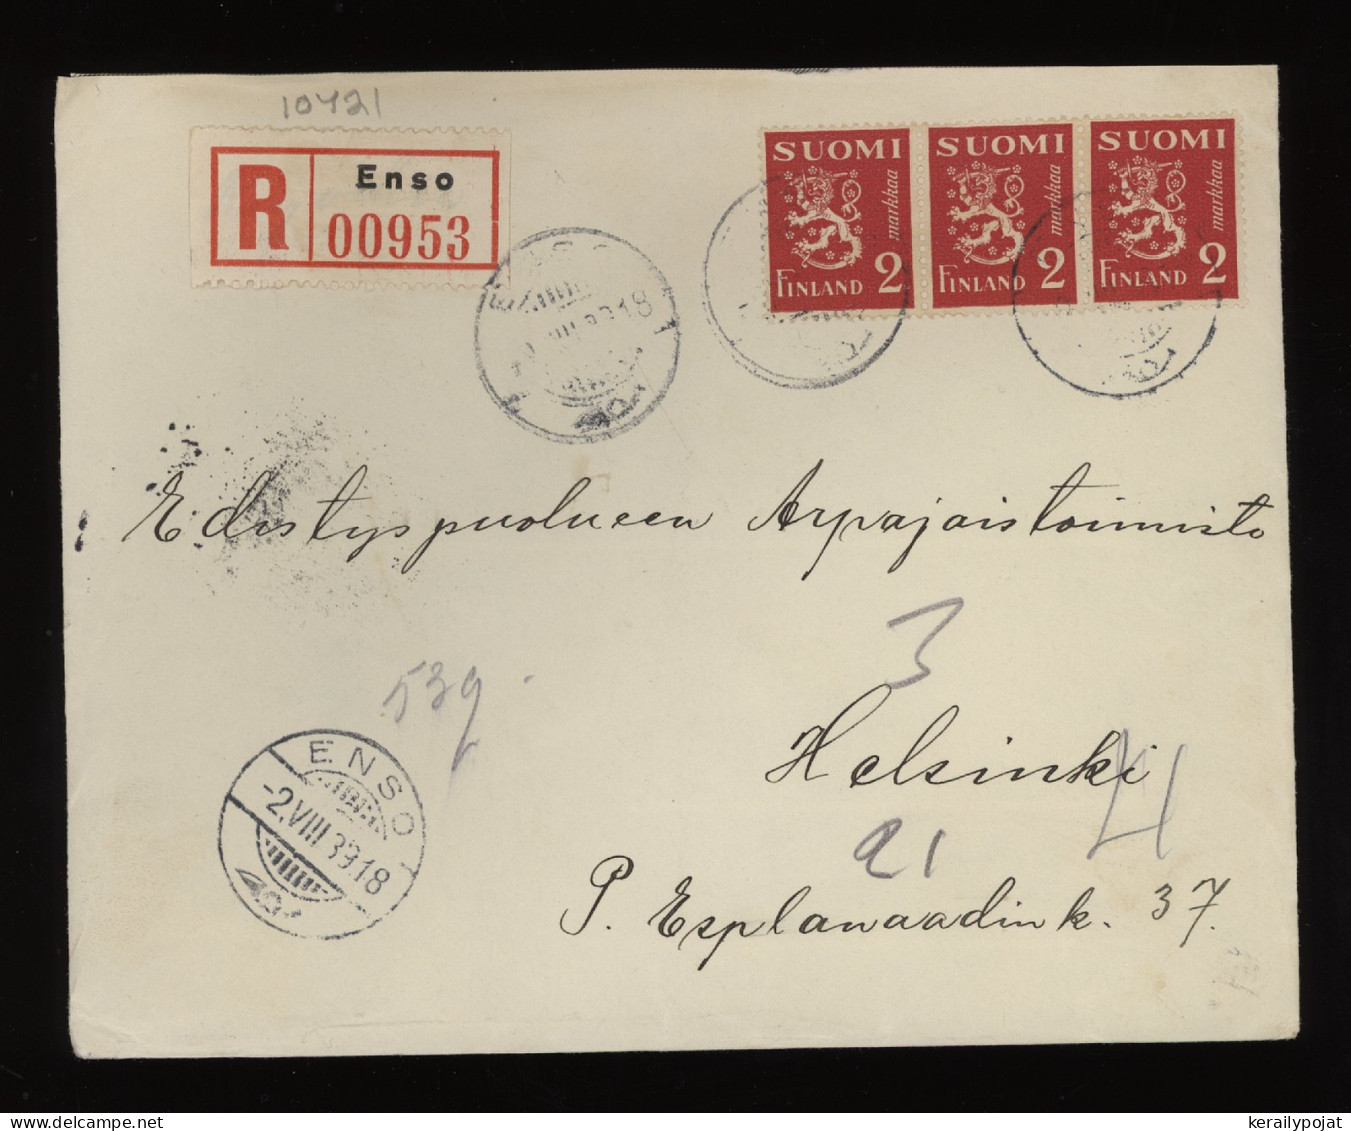 Finland 1939 Enso Registered Cover__(10421) - Briefe U. Dokumente